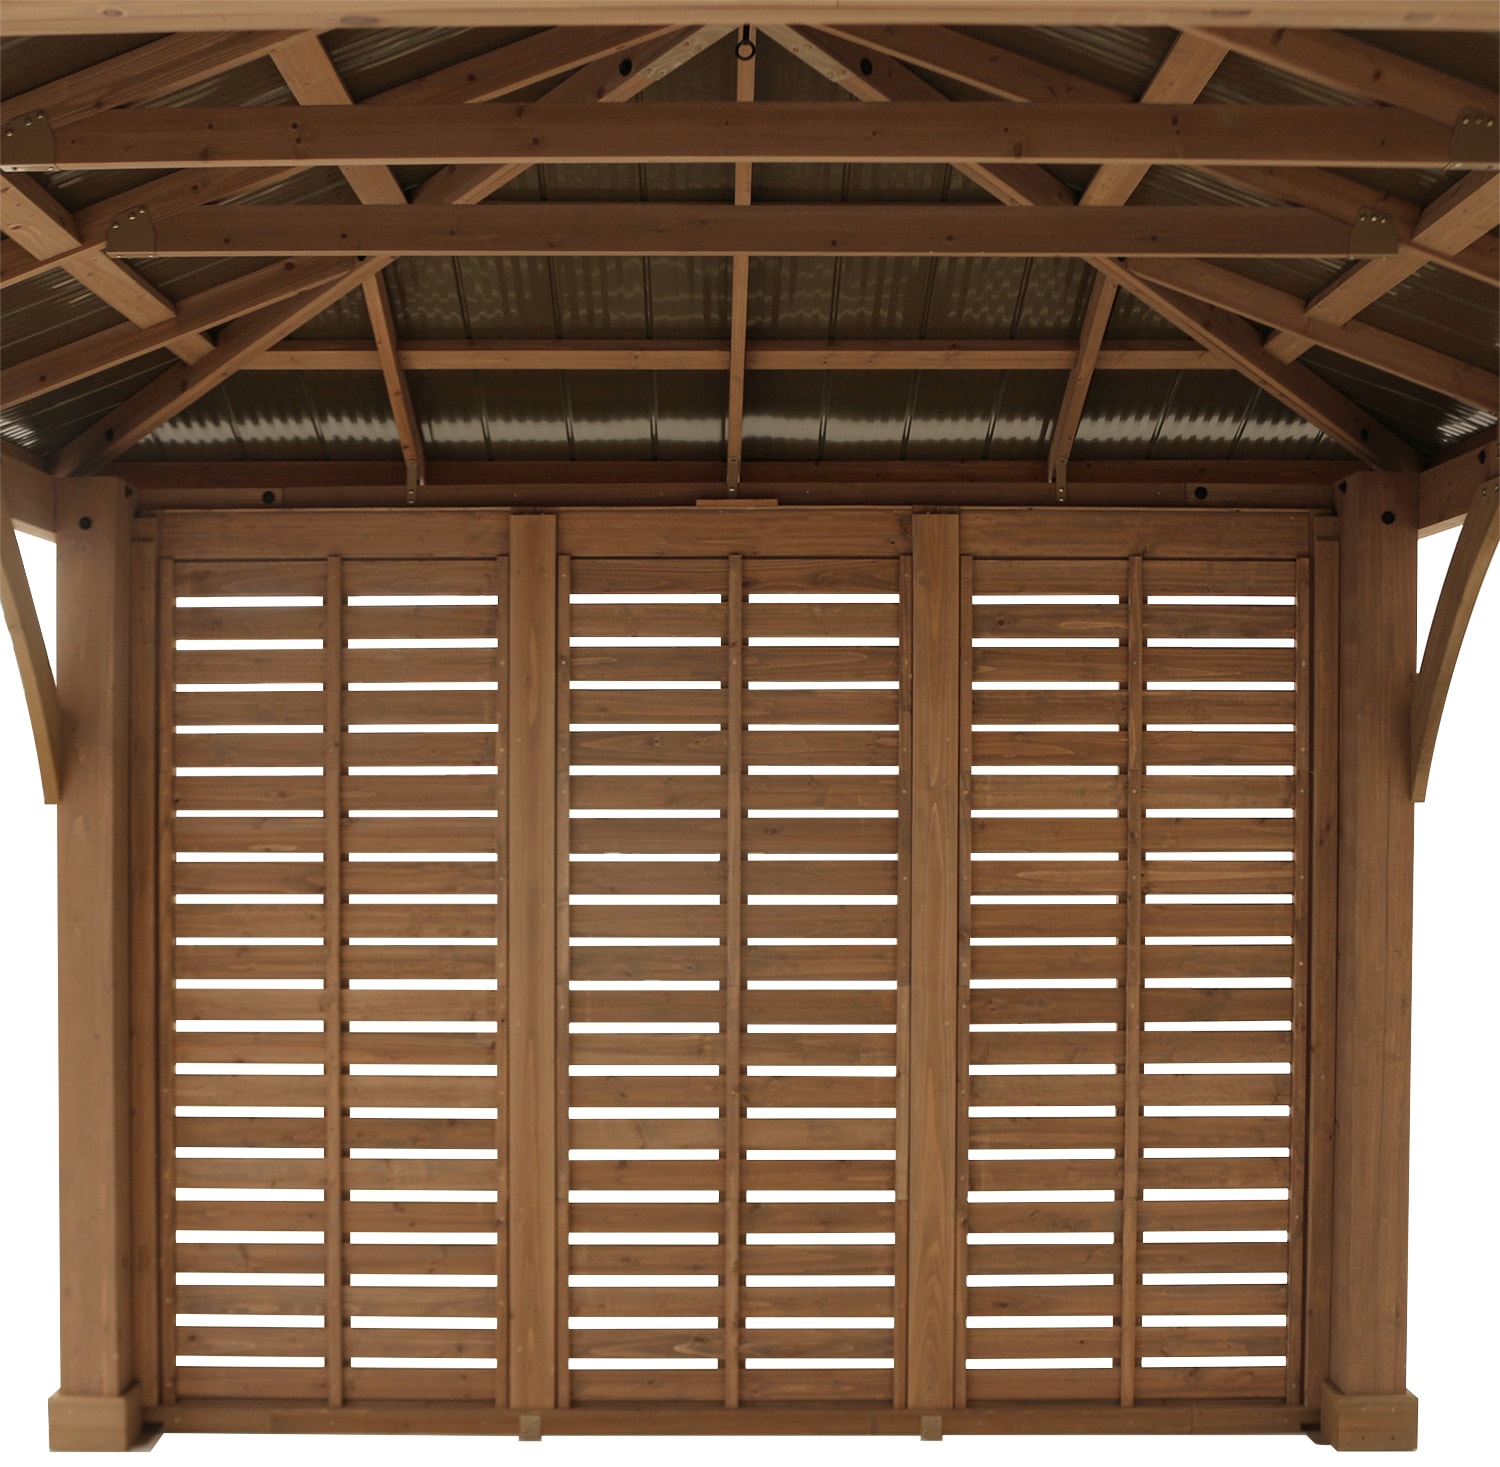 WESTMANN Sichtschutzelement, für Holzpavillon »Devon«, BxH: 298x232 cm